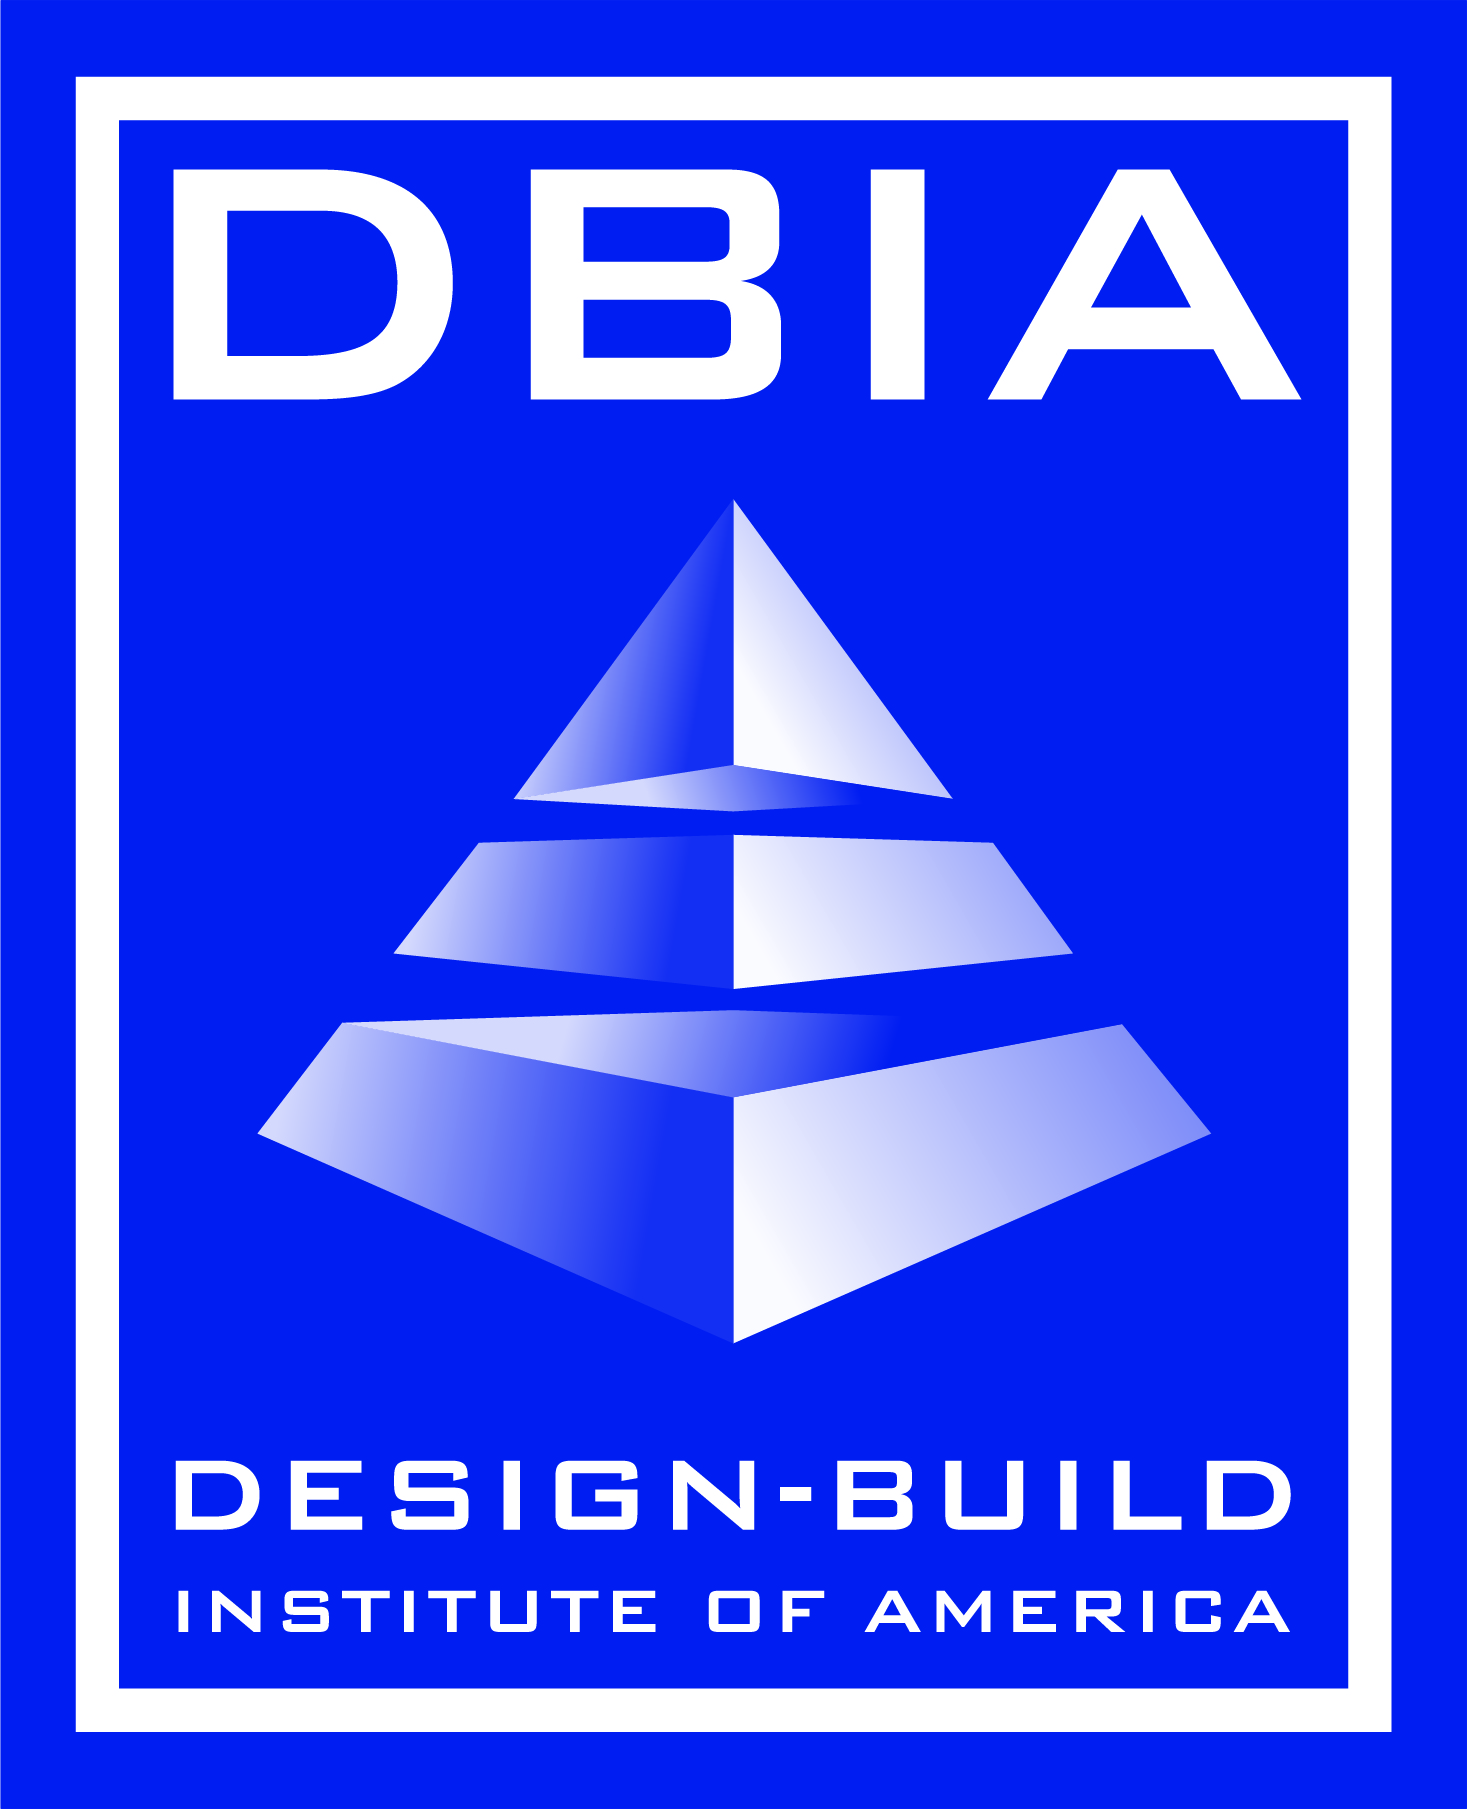 DBIA Announces the N